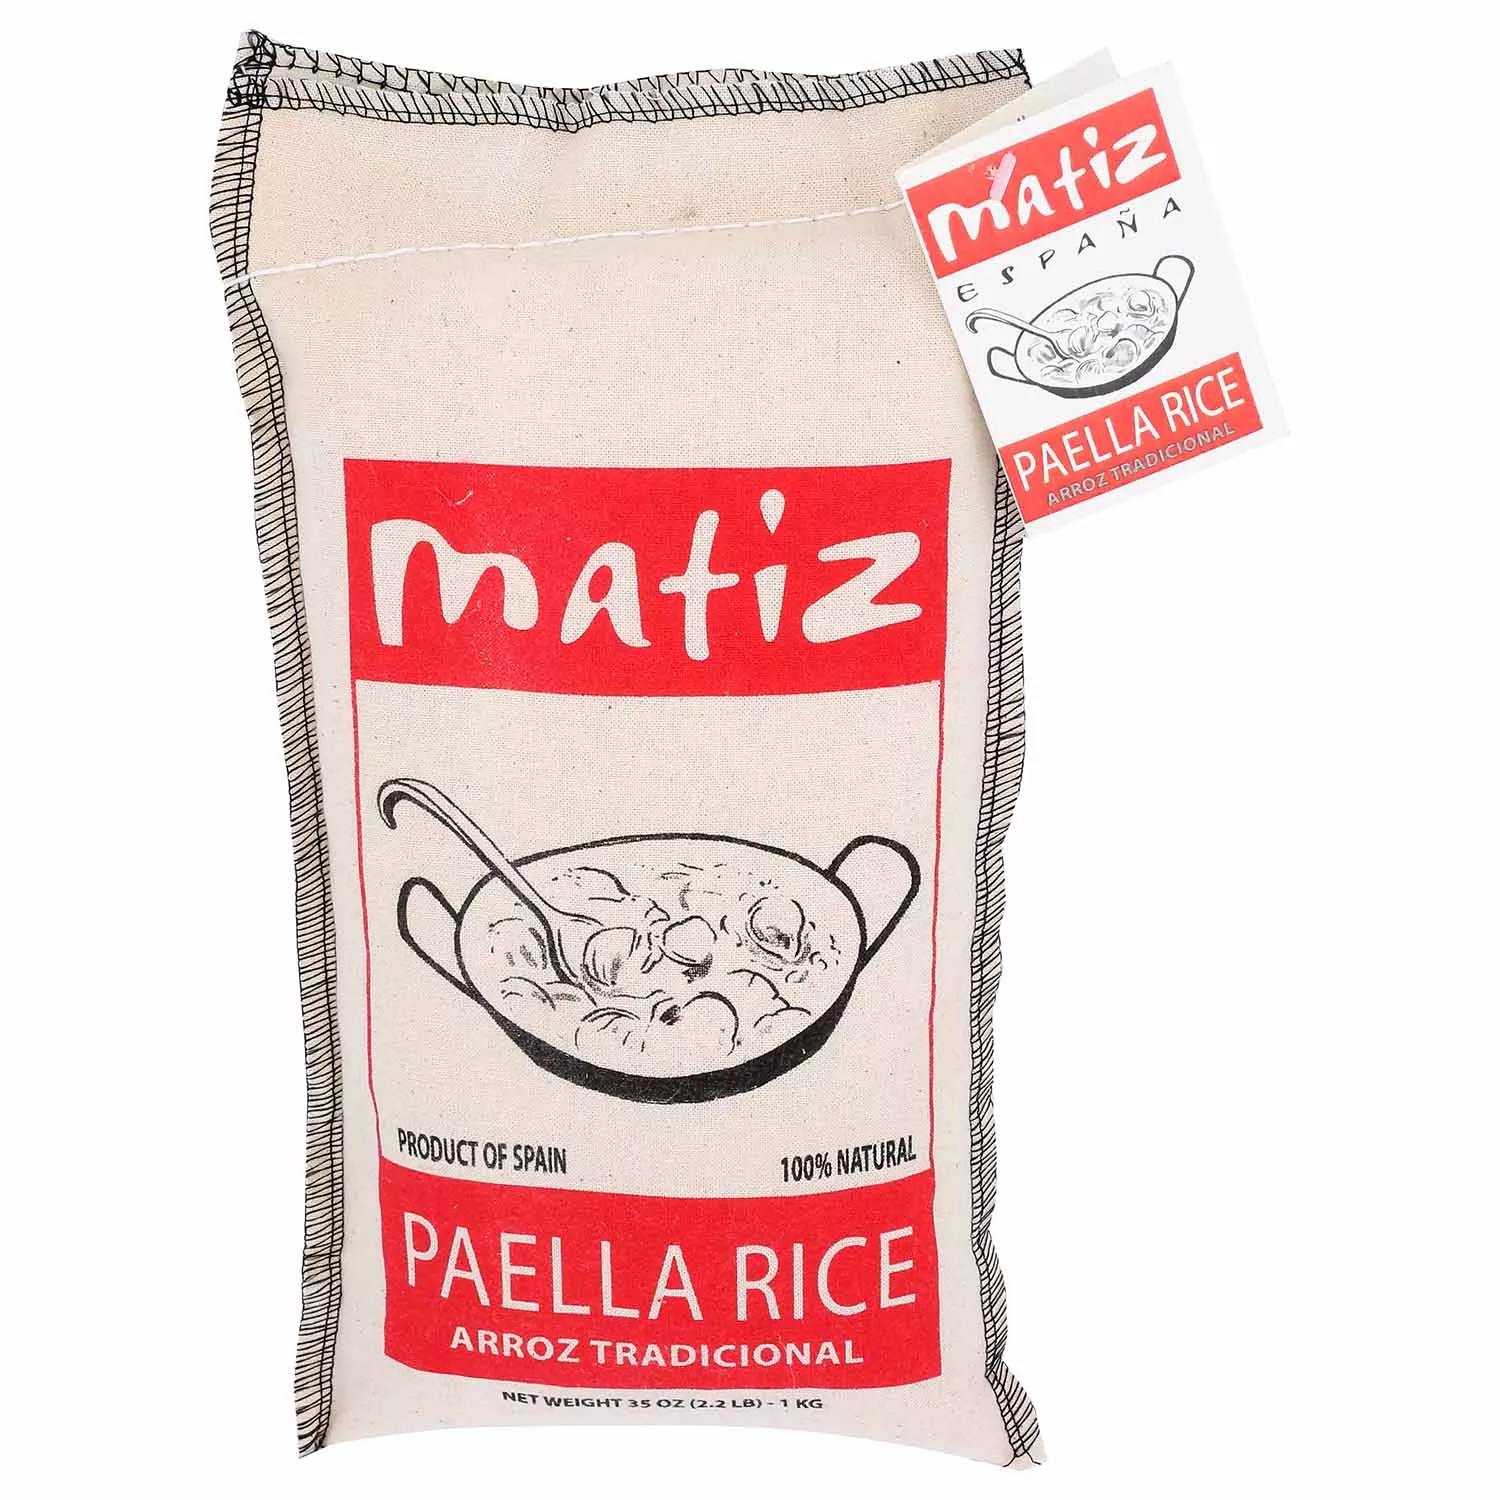 Matiz Valencia Paella Rice, 35 oz.